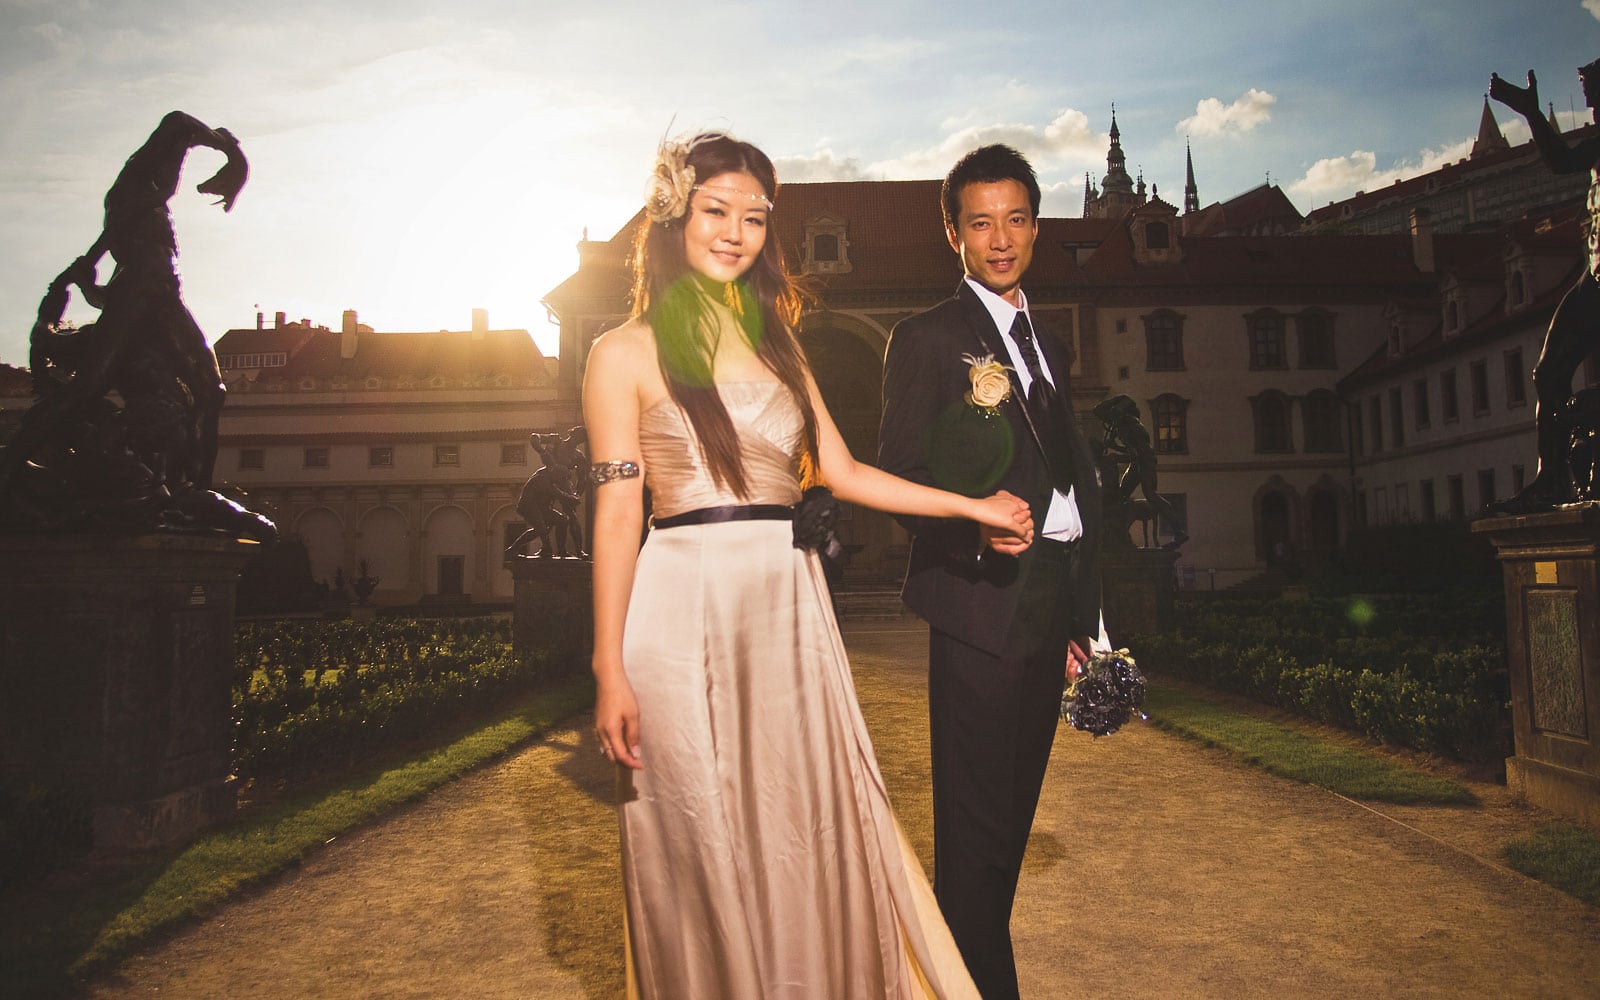 Prague pre weddings / Yvonne & Raymond / stylish portrait session at the Wallenstein Garden